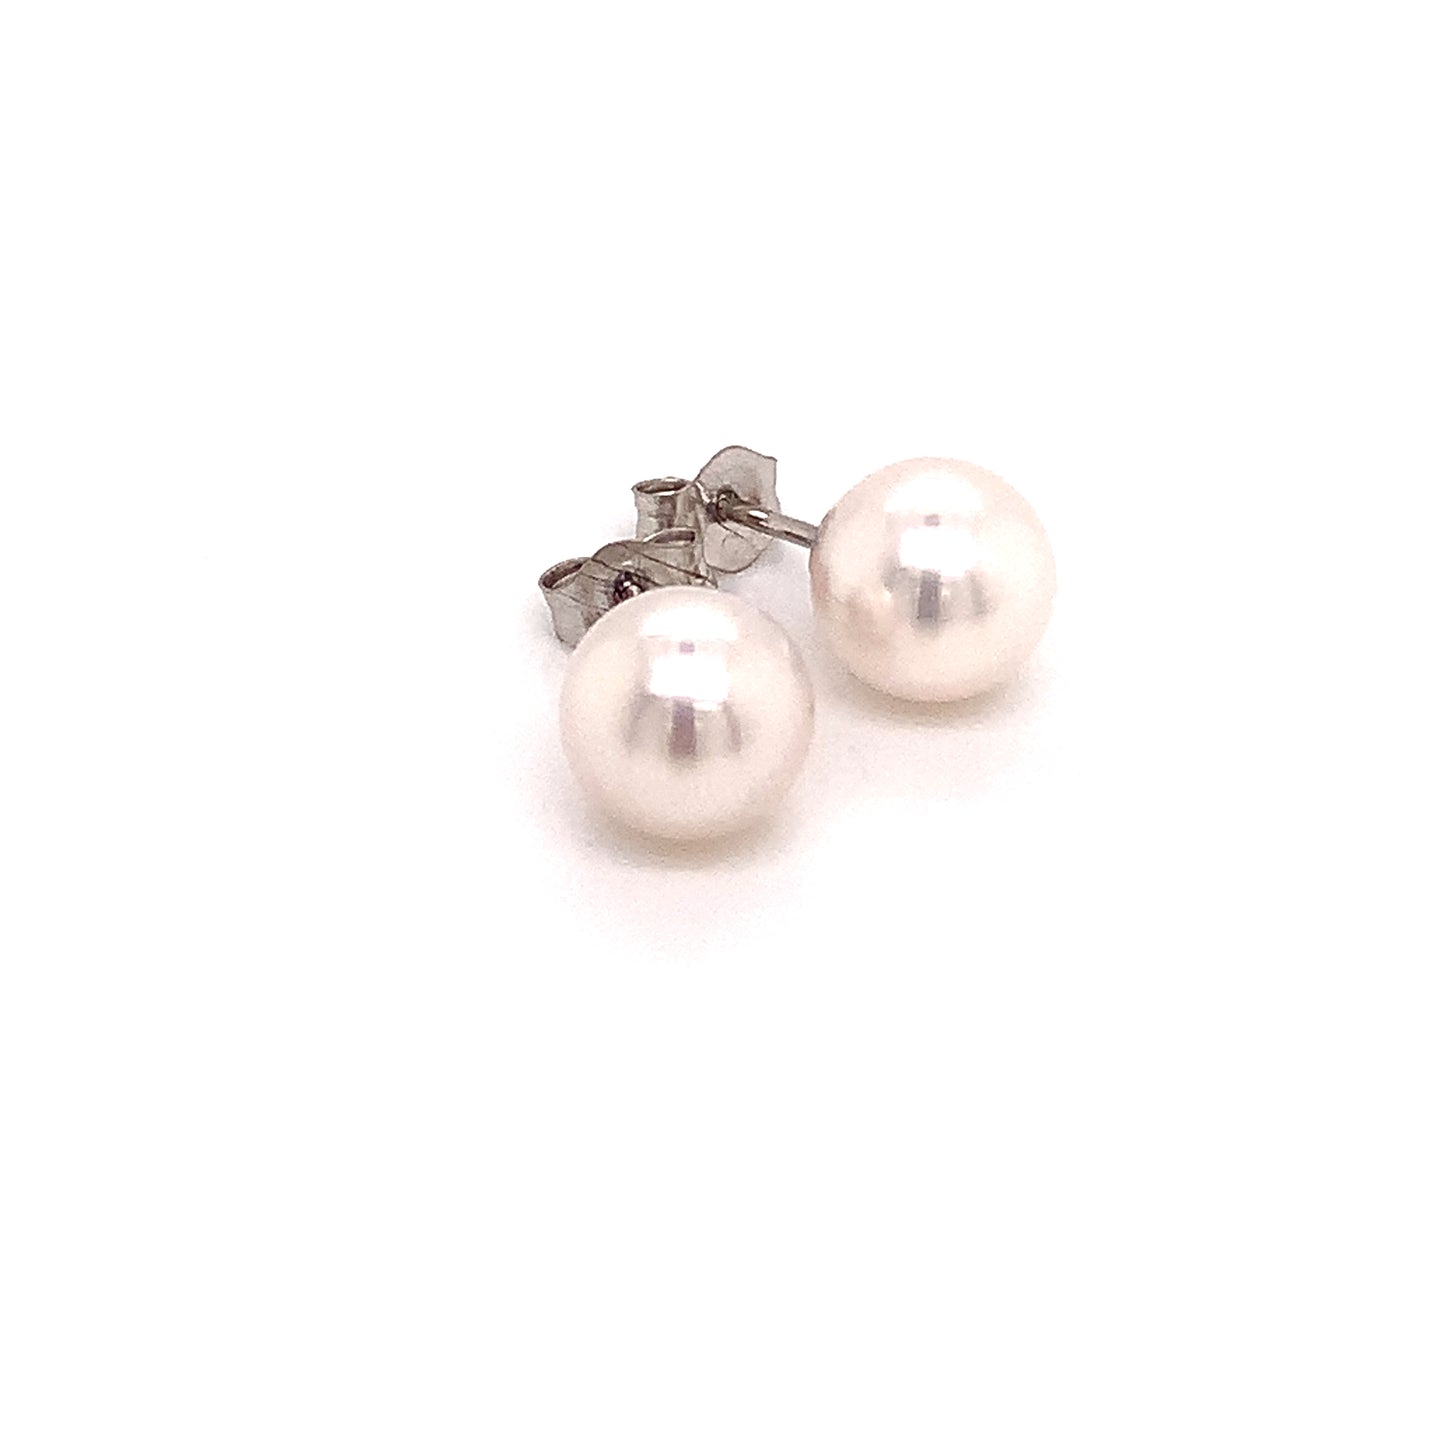 Akoya Pearl Stud Earrings 14k White Gold 6.48 mm Certified $499 015849 - Certified Estate Jewelry